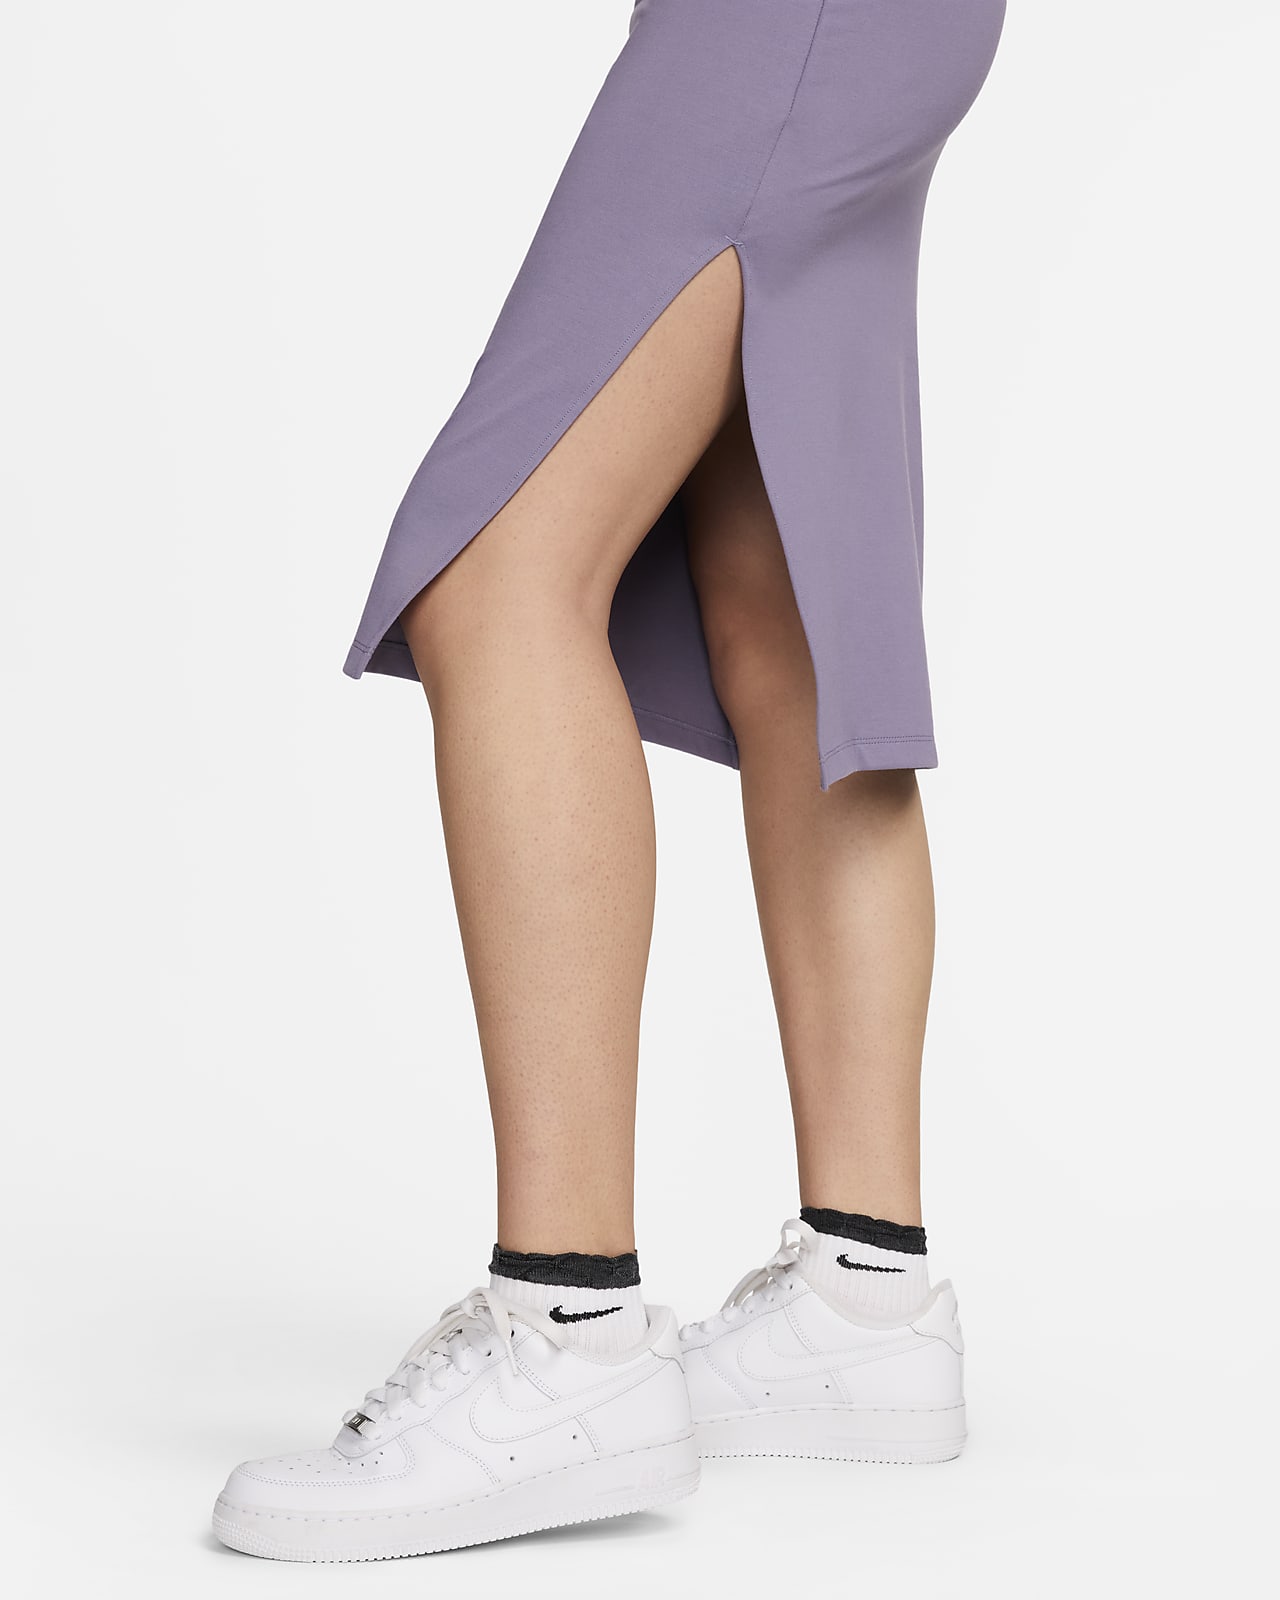 Purple India Leggings in Rayon Lycra Dance Wear, Yoga Wear, Active Wear,  Casual Wear -  Canada